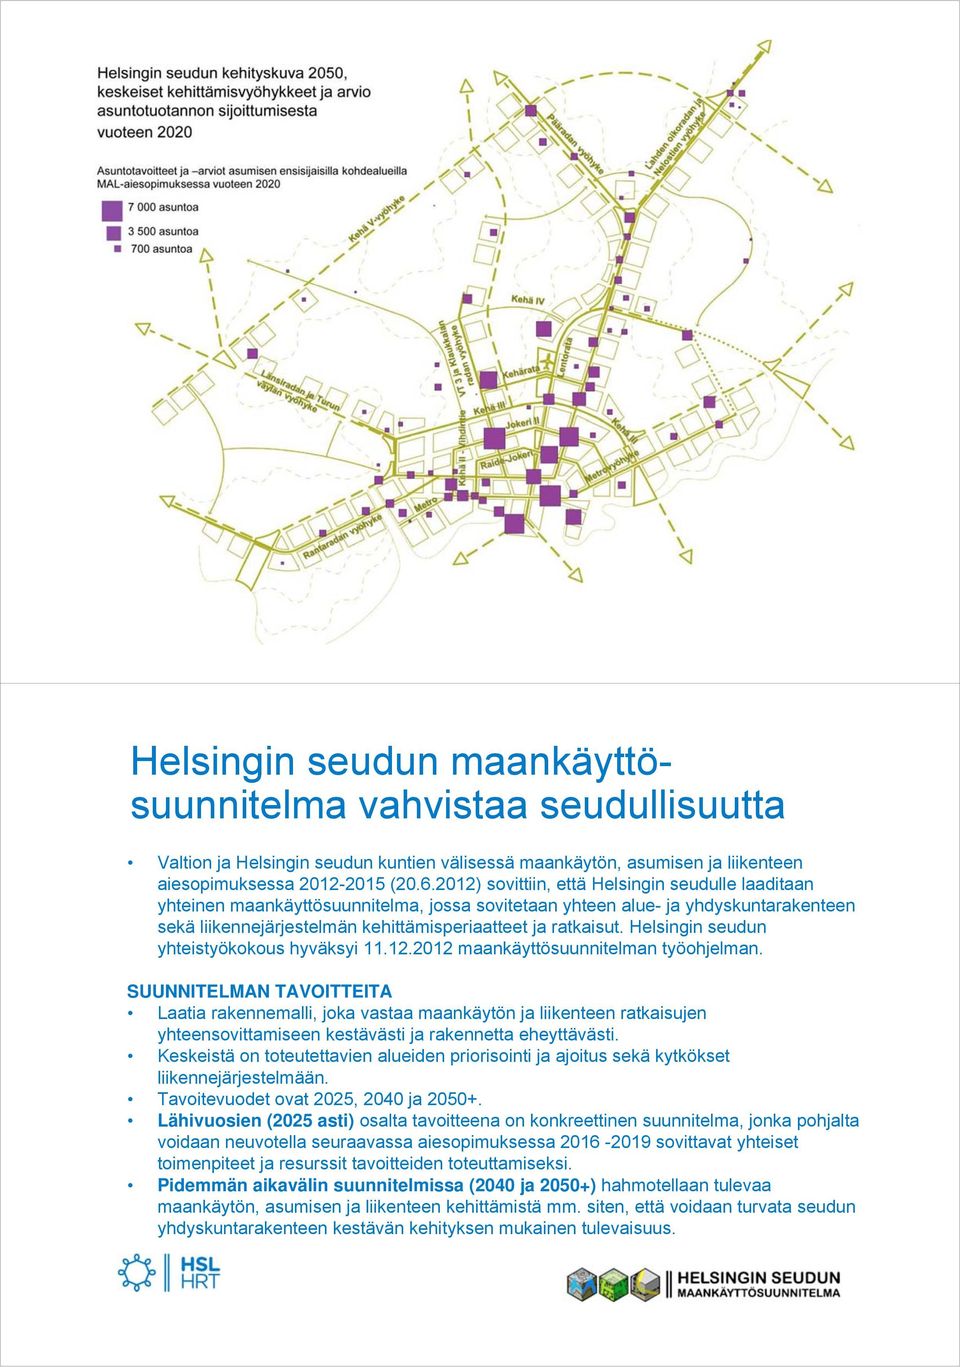 Helsingin seudun yhteistyökokous hyväksyi 11.12.2012 maankäyttösuunnitelman työohjelman.